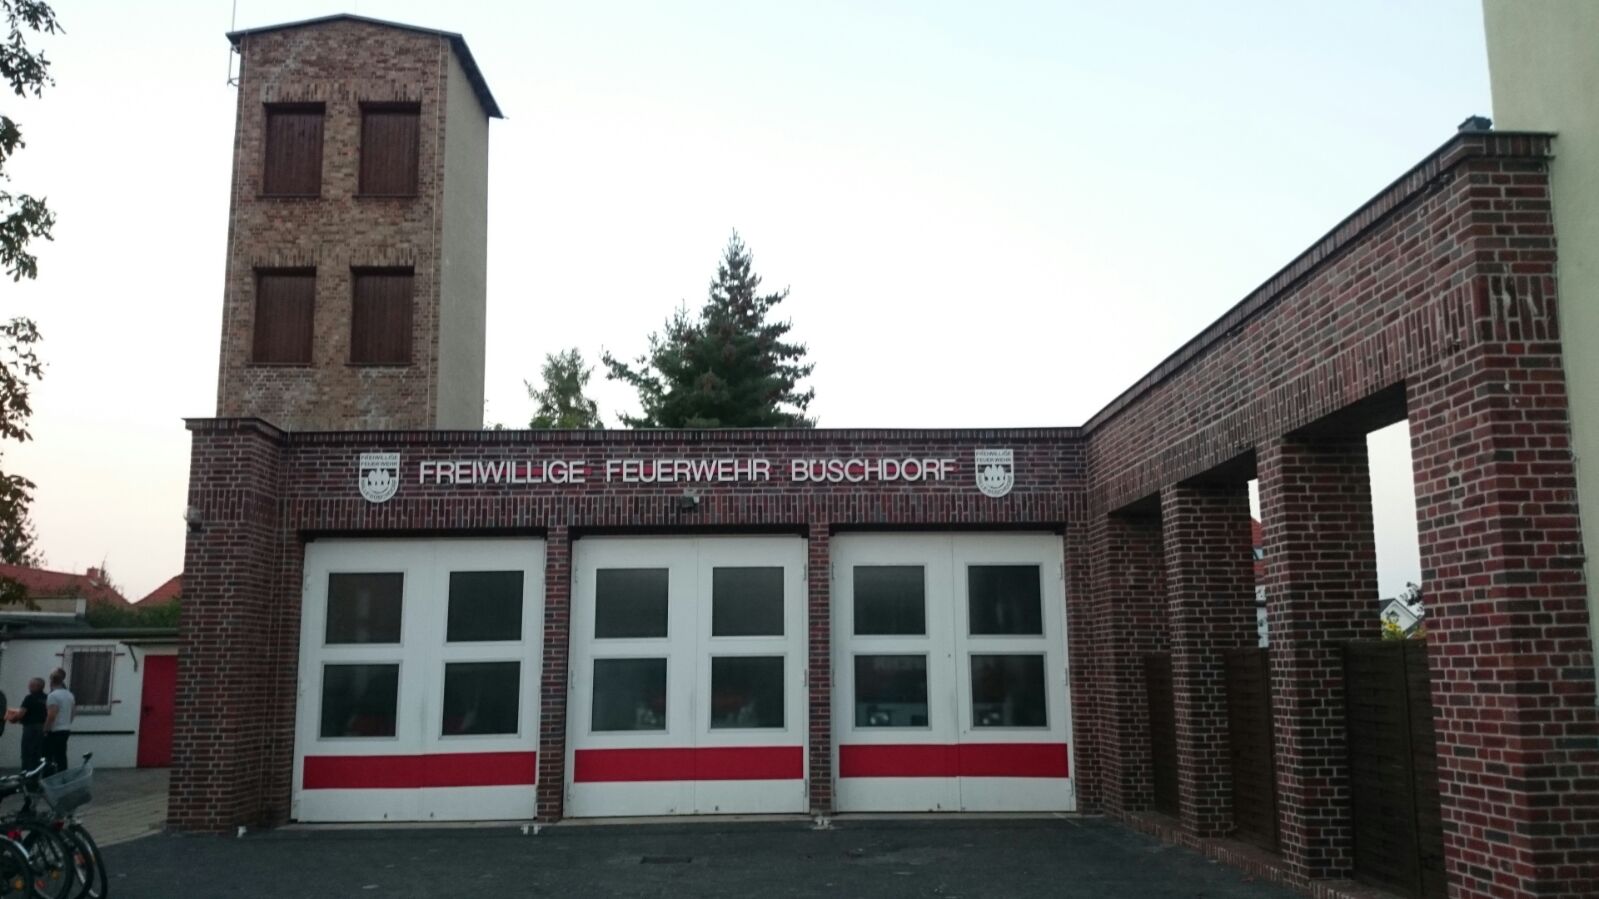 Altes-Ger-tehaus-der-Freiwilligen-Feuerwehr-B-schdorf-Stadt-hat-kein-Geld-f-r-Erweiterungen-und-Umbauten-SPD-unterst-tzt-Nachnutzung-beispielsweise-als-Begegnungsst-tte-oder-Bibliothek